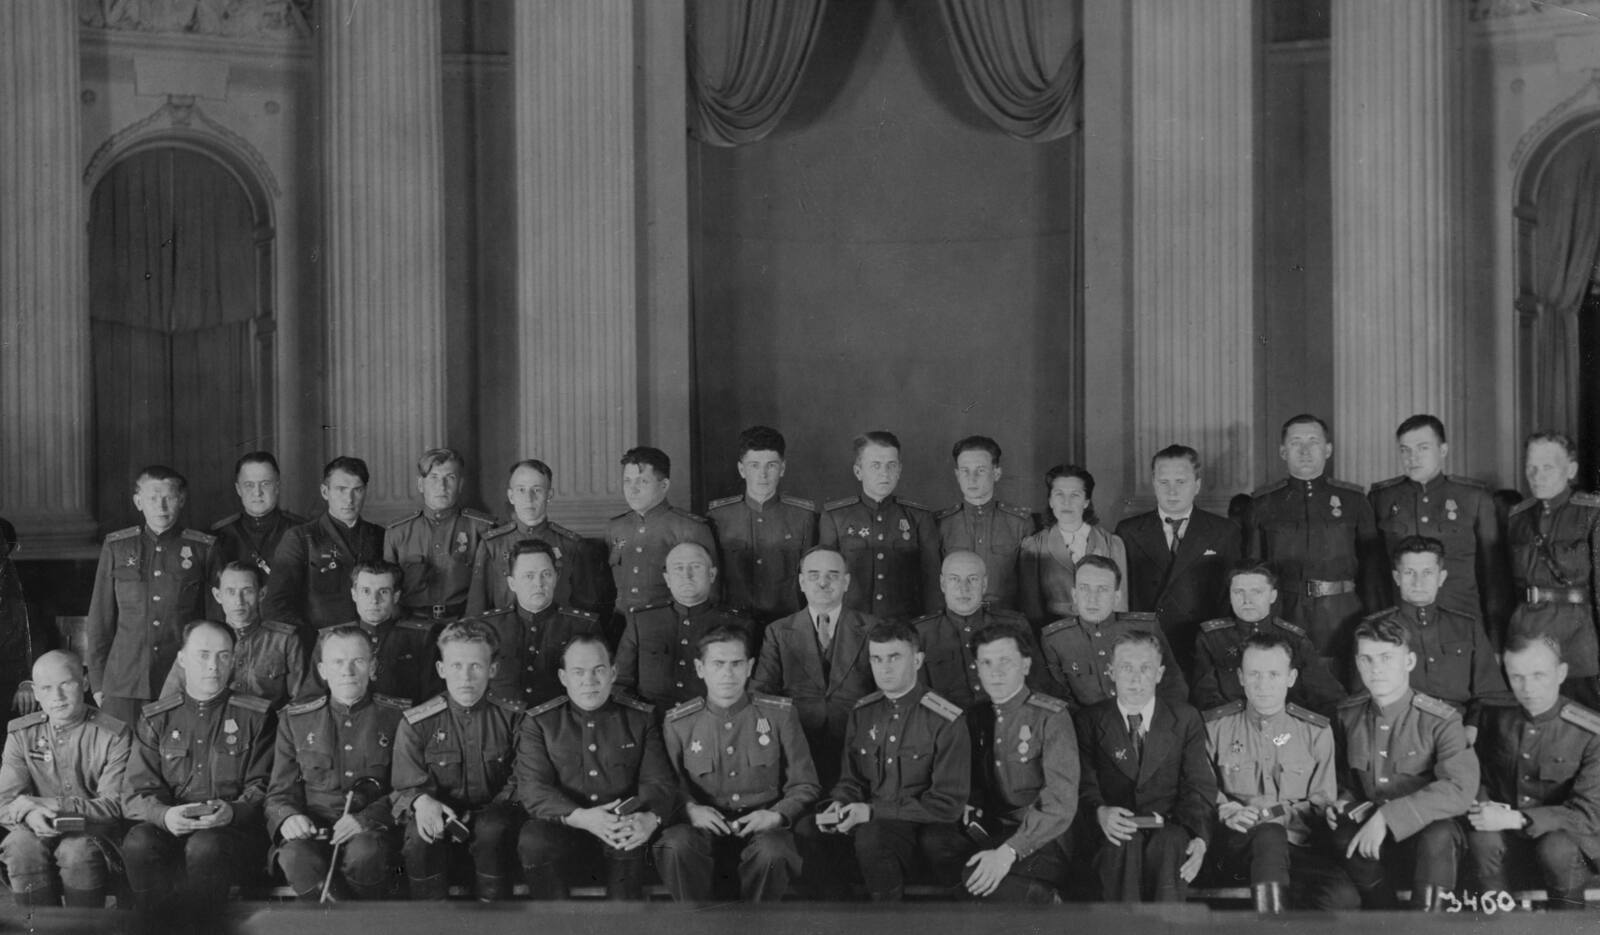 Сотрудники СМЕРШ после награждения орденами. П.Я.Мешик 3-й во 2-м ряду. 1943 г.